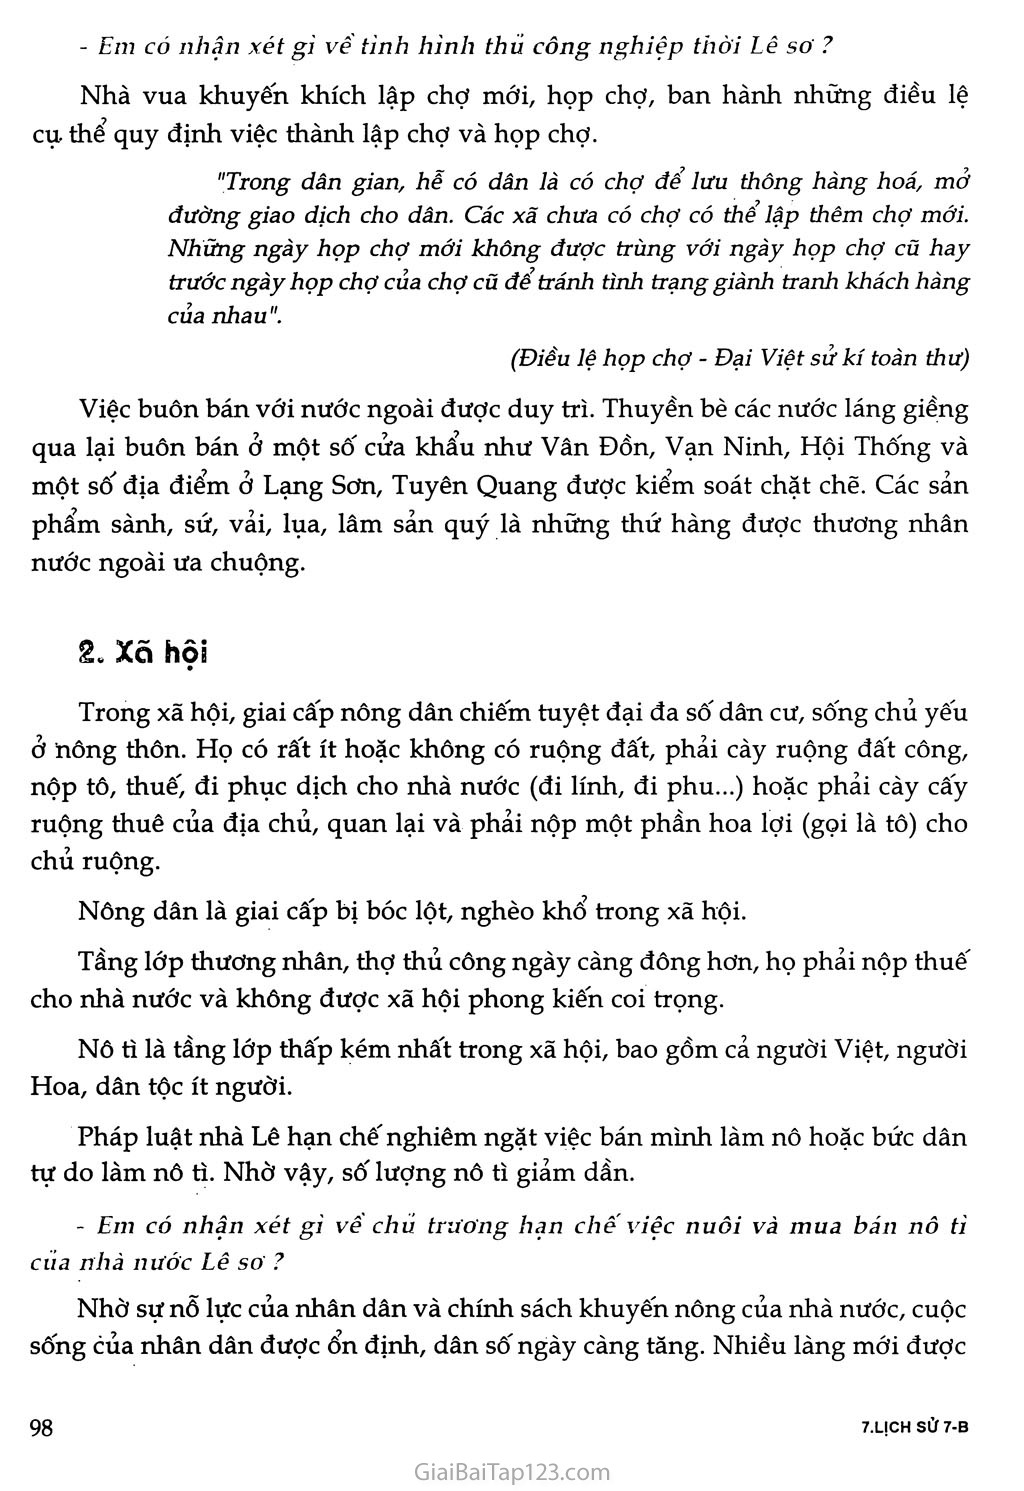 Bài 20 - Nước Đại Việt thời Lê sơ (1428 - 1527) trang 5